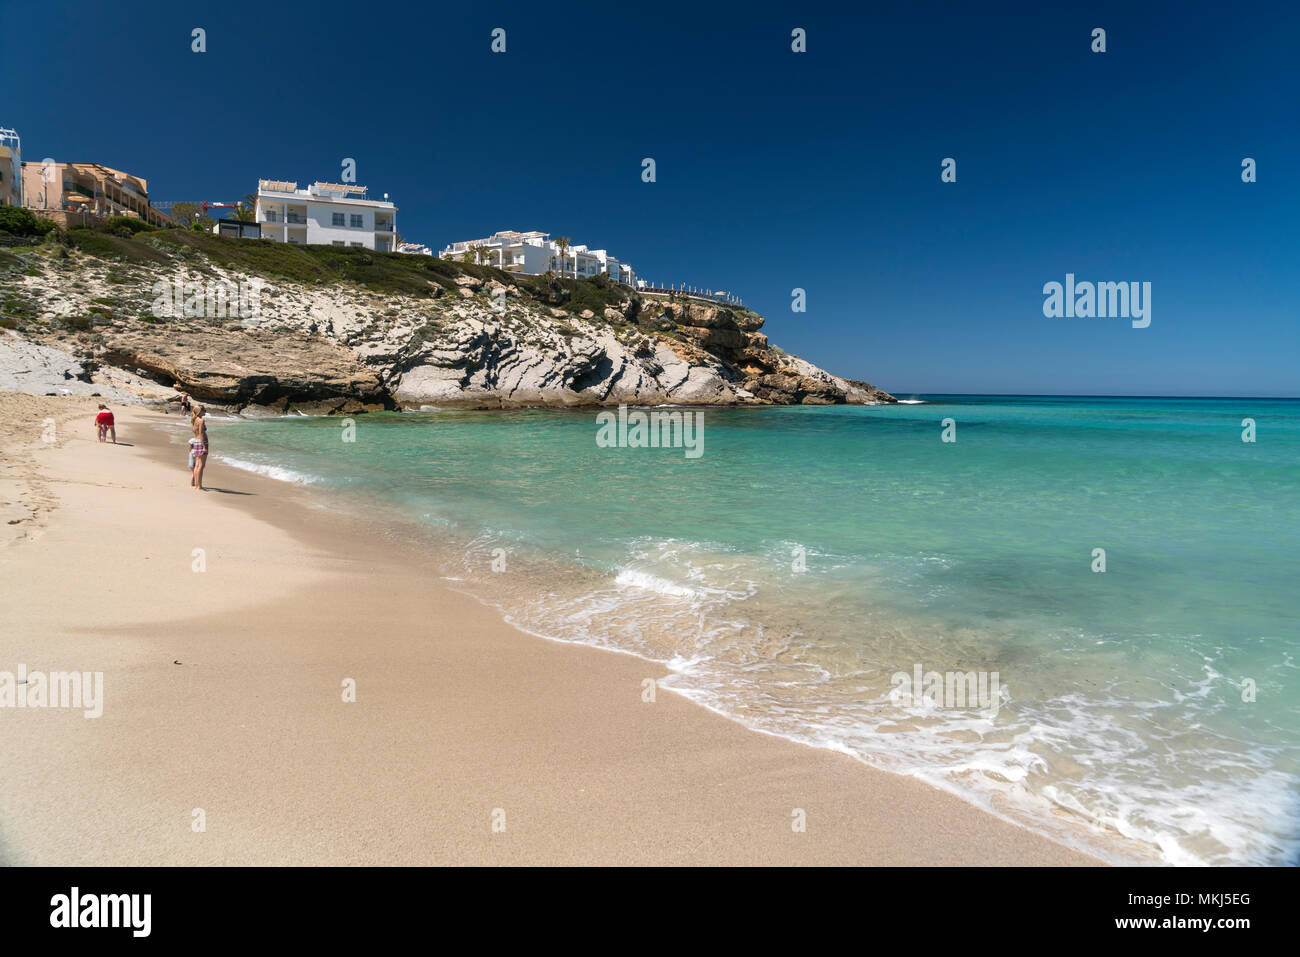 Strand und Bucht der Cala Mesquida, Capdepera, Mallorca, Balearen, Spanien  | Cala Mesquida beach and bay, Capdepera, Majorca, Balearic Islands, Spain Stock Photo